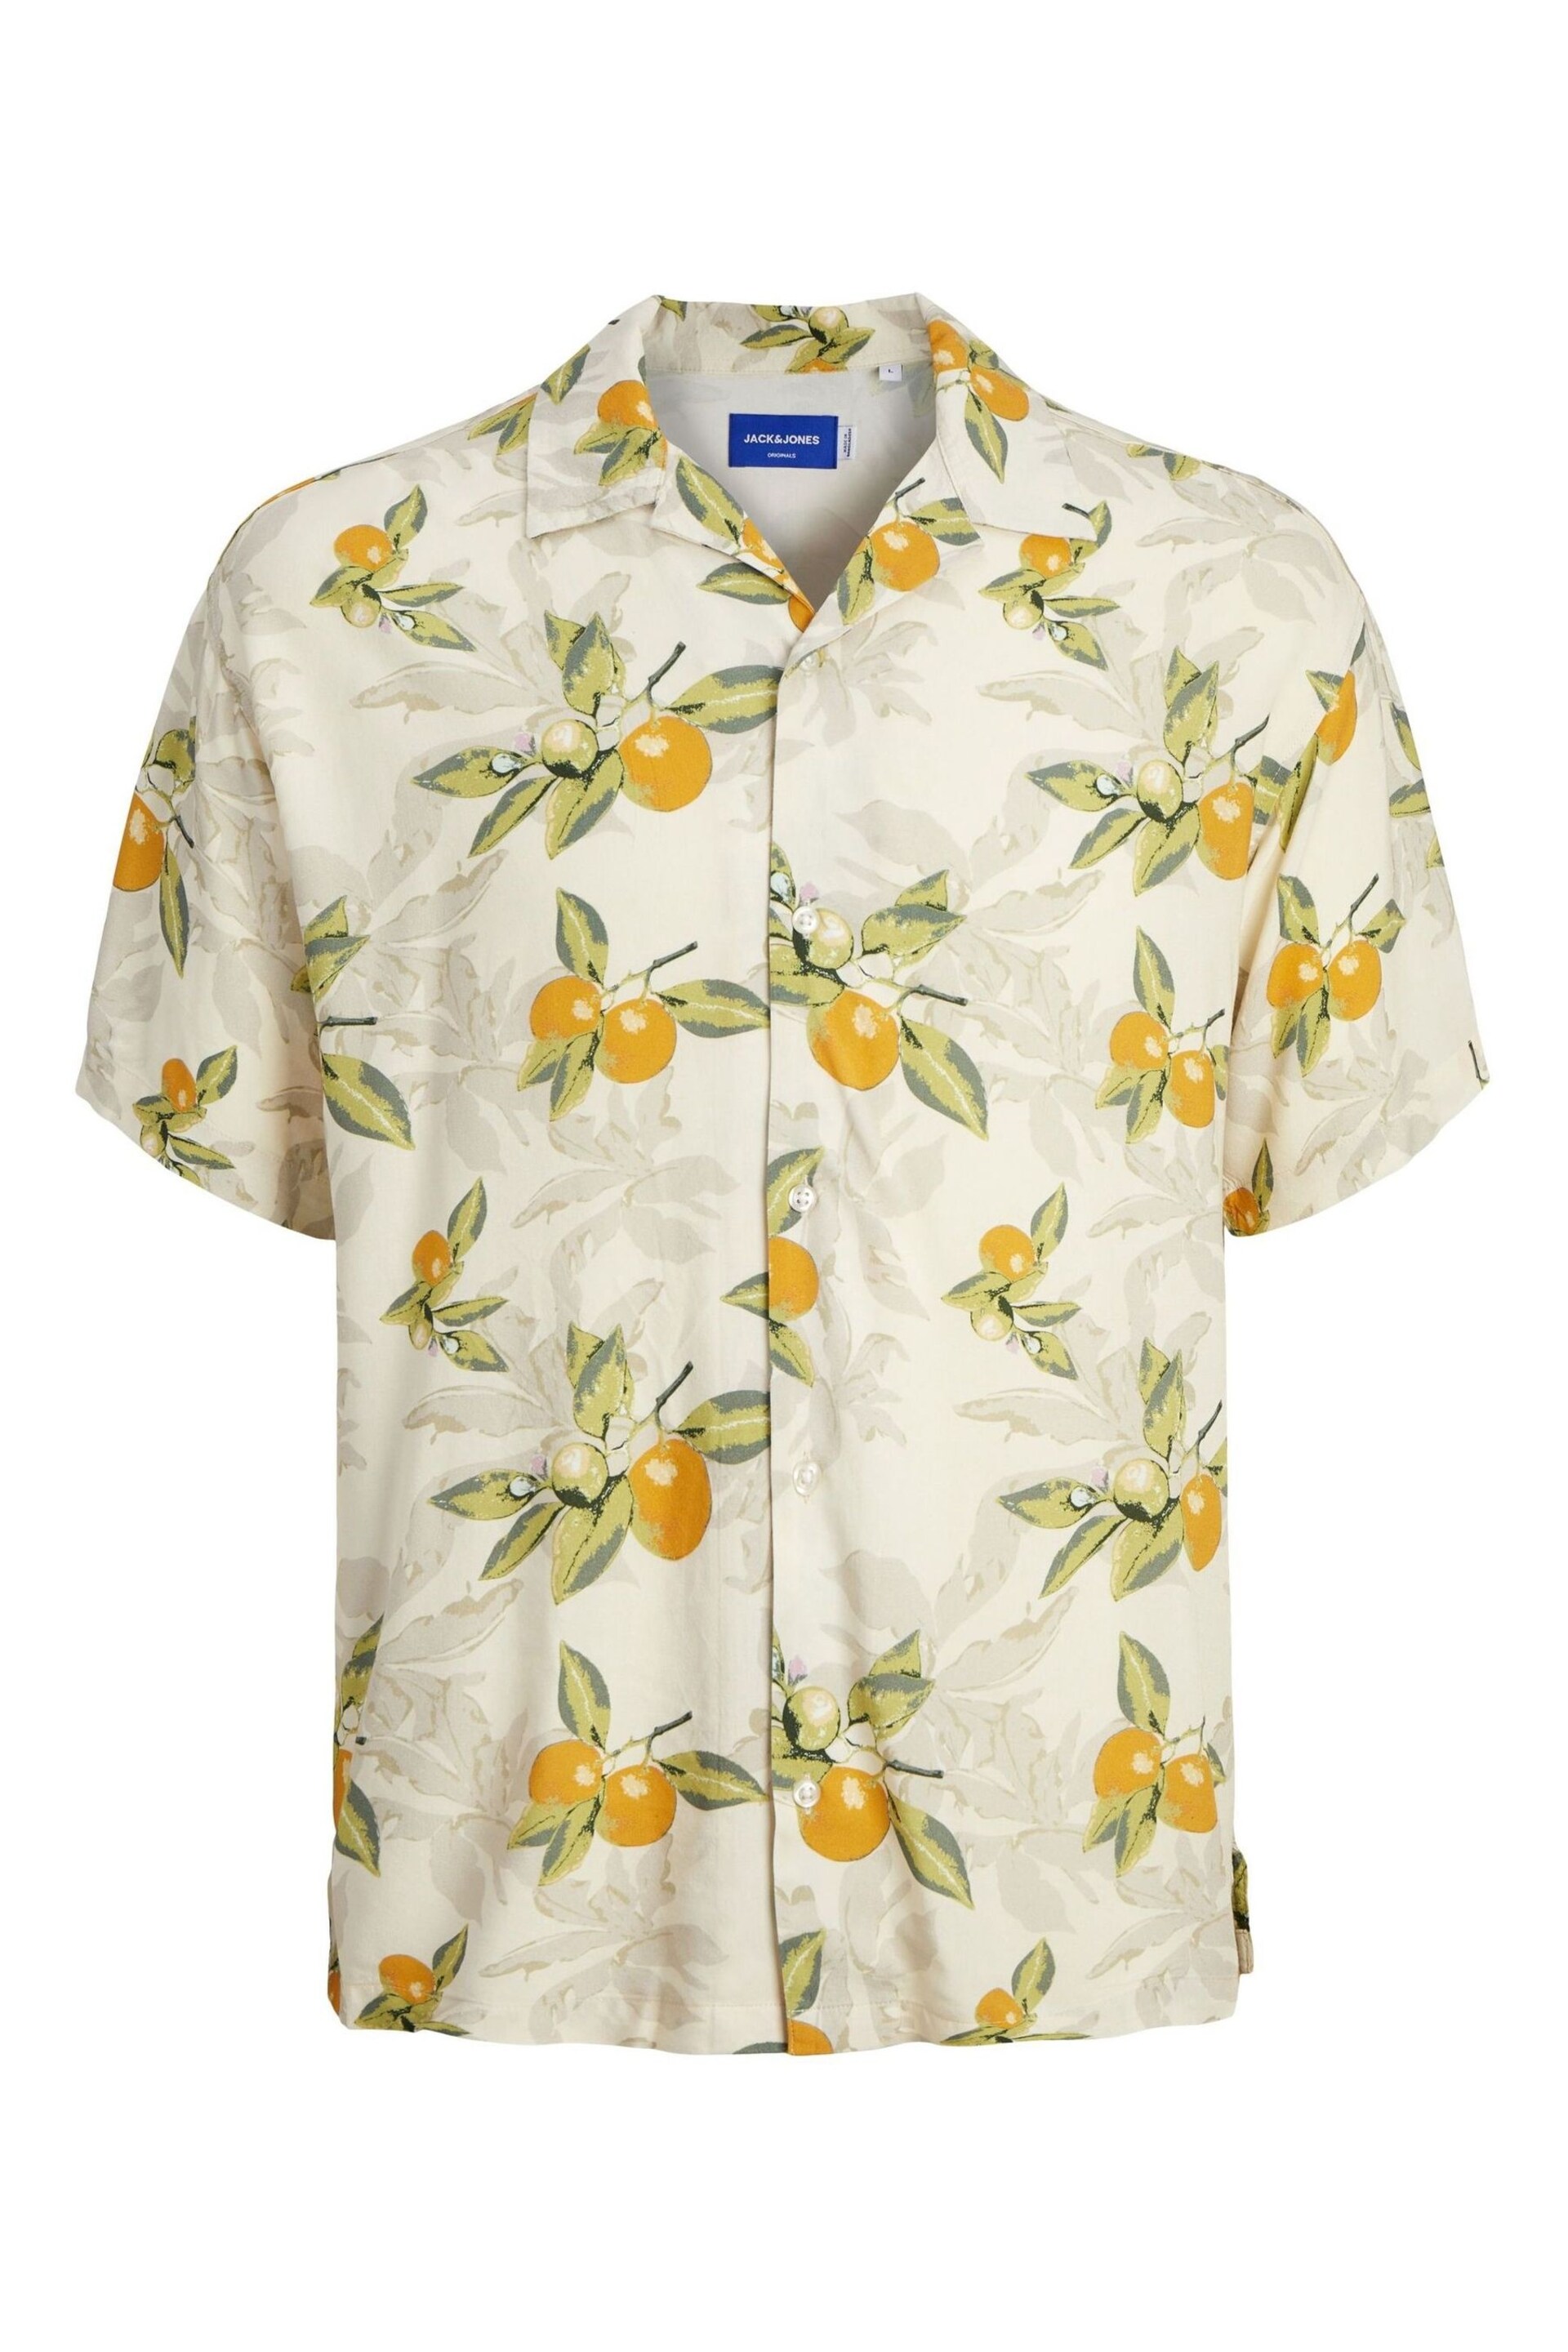 JACK & JONES White Printed Revere Collar Short Sleeve Summer Shirt - Image 6 of 6